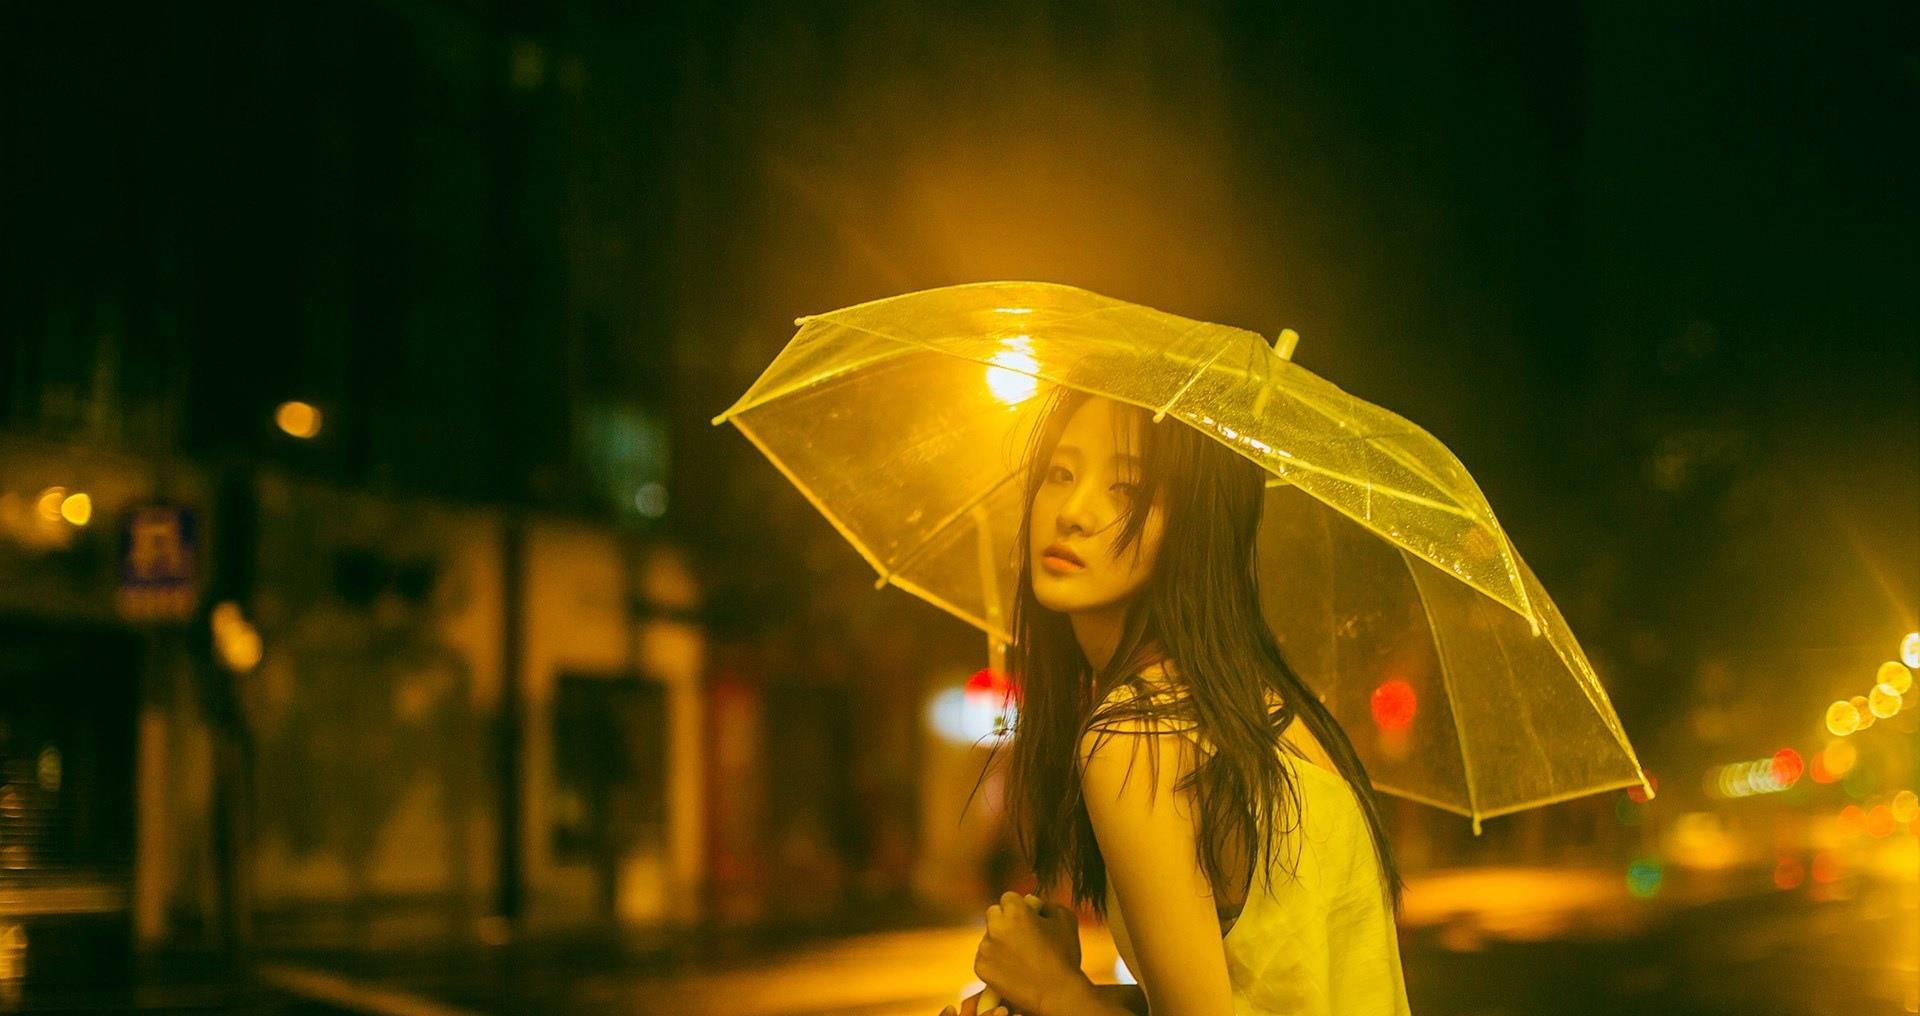 下雨天 伤感的女孩在雨中独自徘徊,我想你了